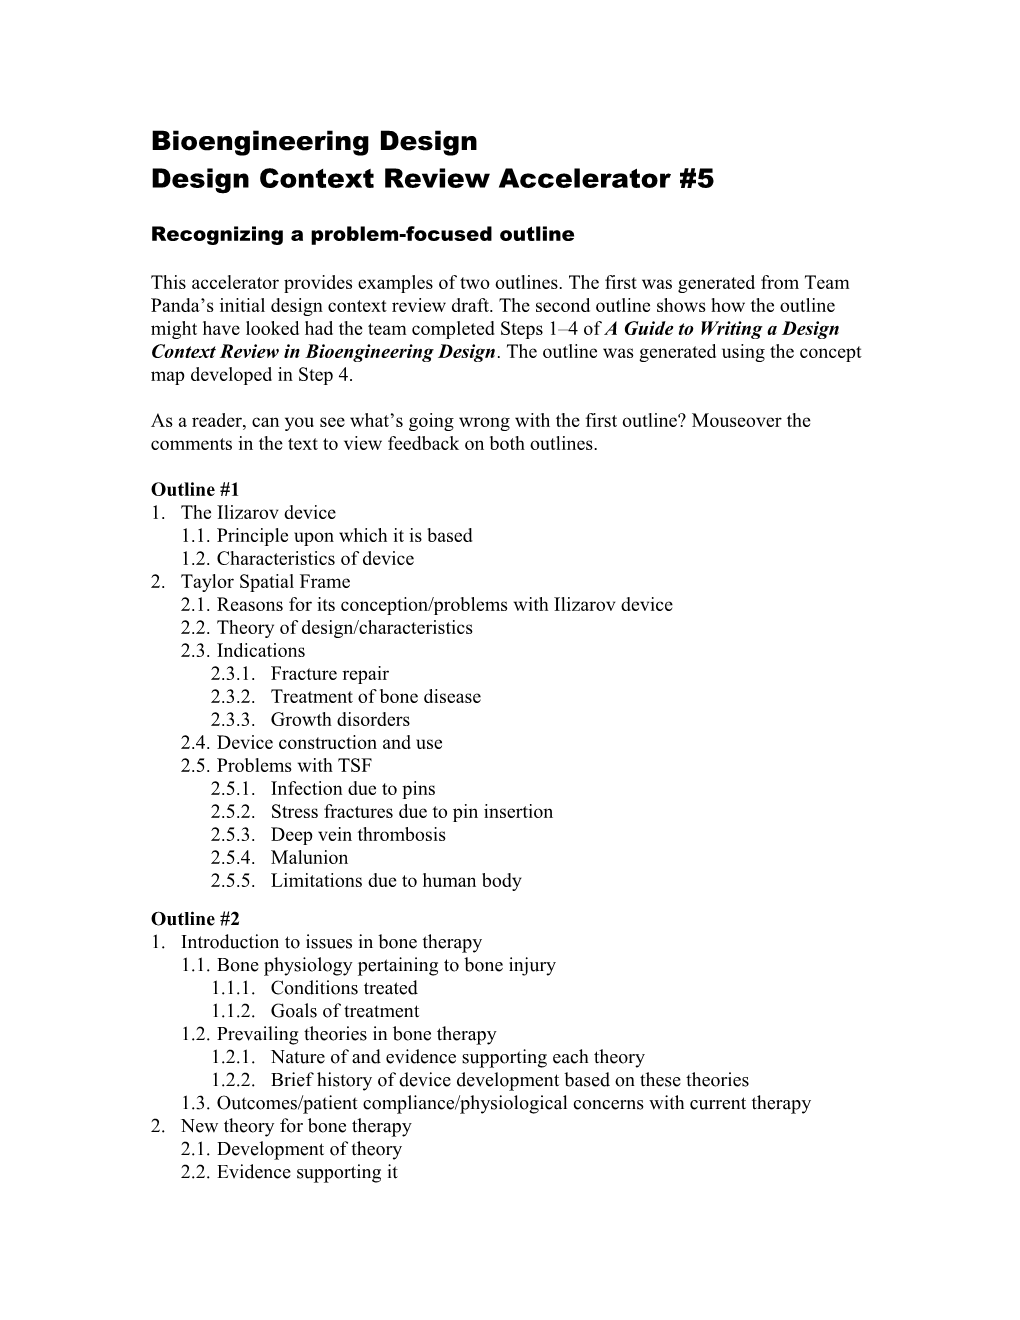 Design Context Review Accelerator #5